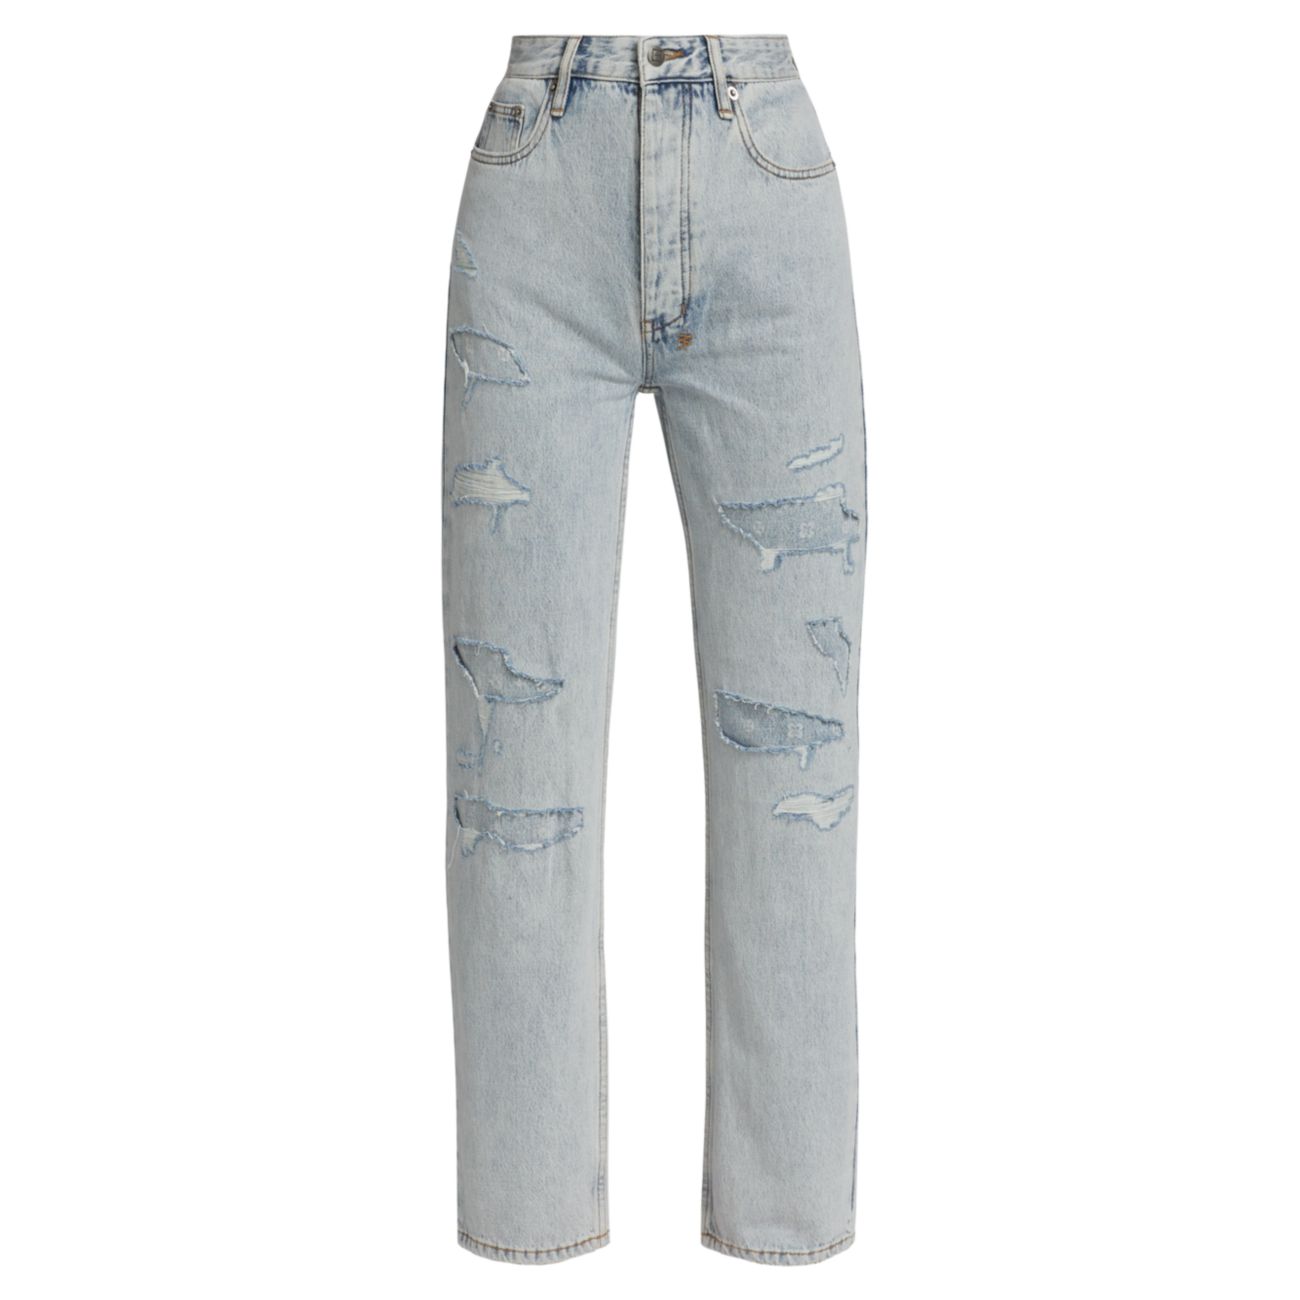 Прямые джинсы Brooklyn с высокой посадкой и эффектом потертости Ksubi